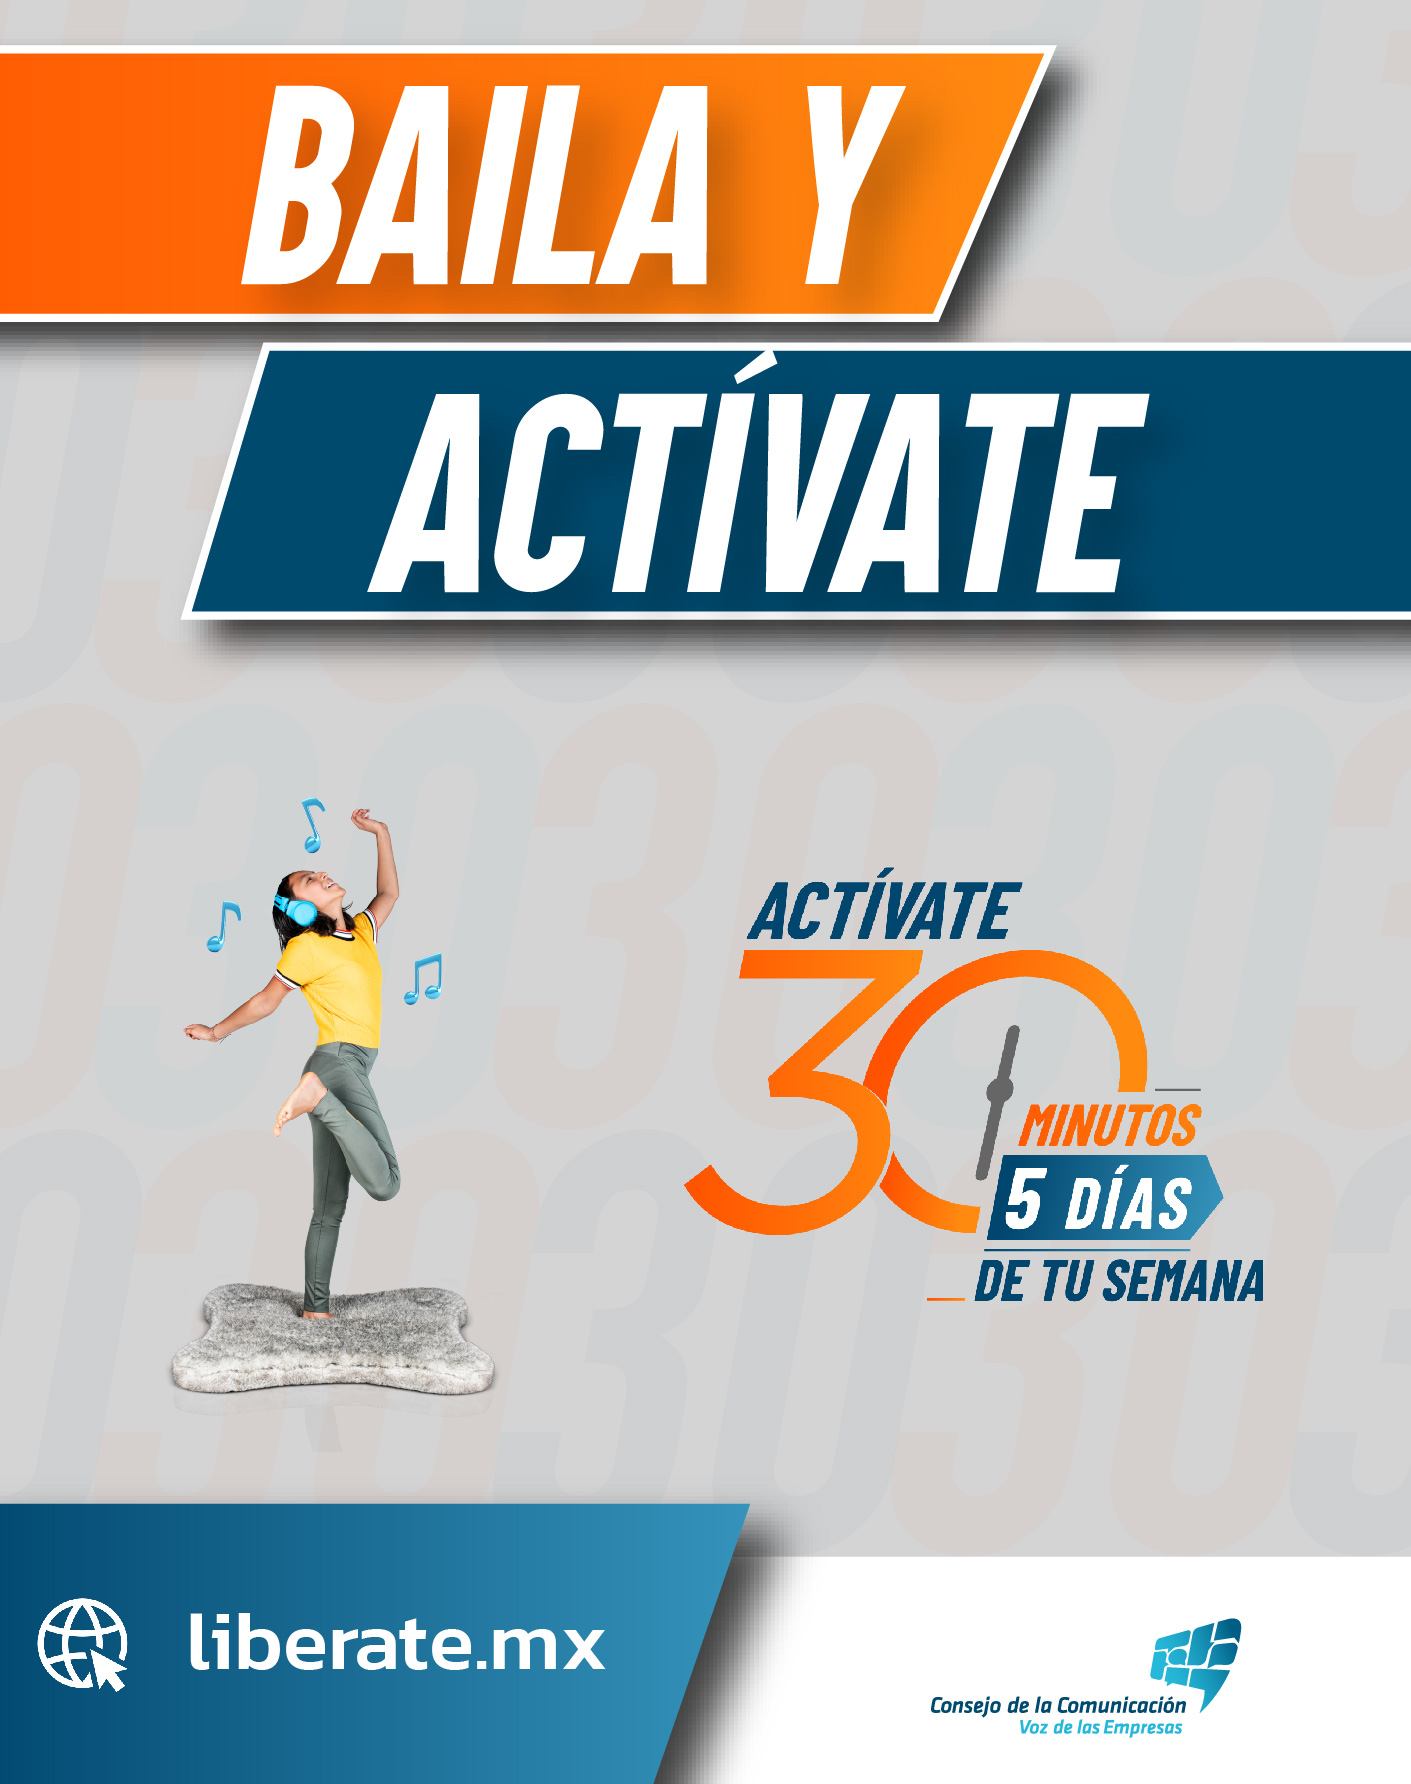 Baila y actívate. Libérate es una campaña del Consejo de la Comunicación, que consiste en hacer actividad física al menos 30 minutos días 5 días de la semana